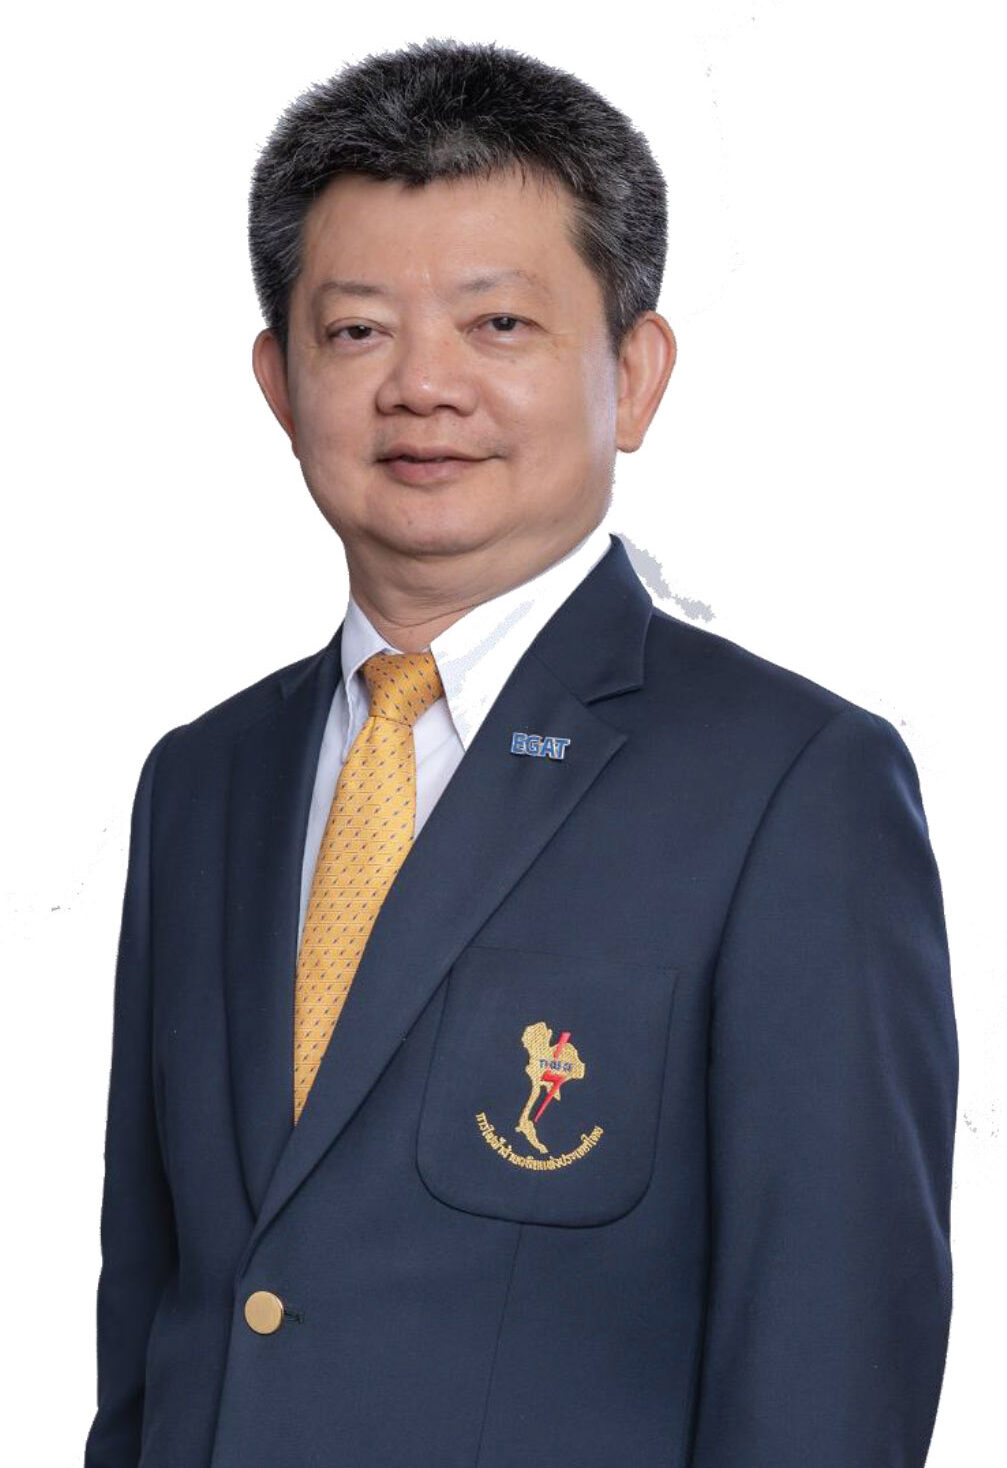 นายประเสริฐศักดิ์ เชิงชวโน รองผู้ว่าการพัฒนาโรงไฟฟ้าและพลังงานหมุนเวียน การไฟฟ้าฝ่ายผลิตแห่งประเทศไทย